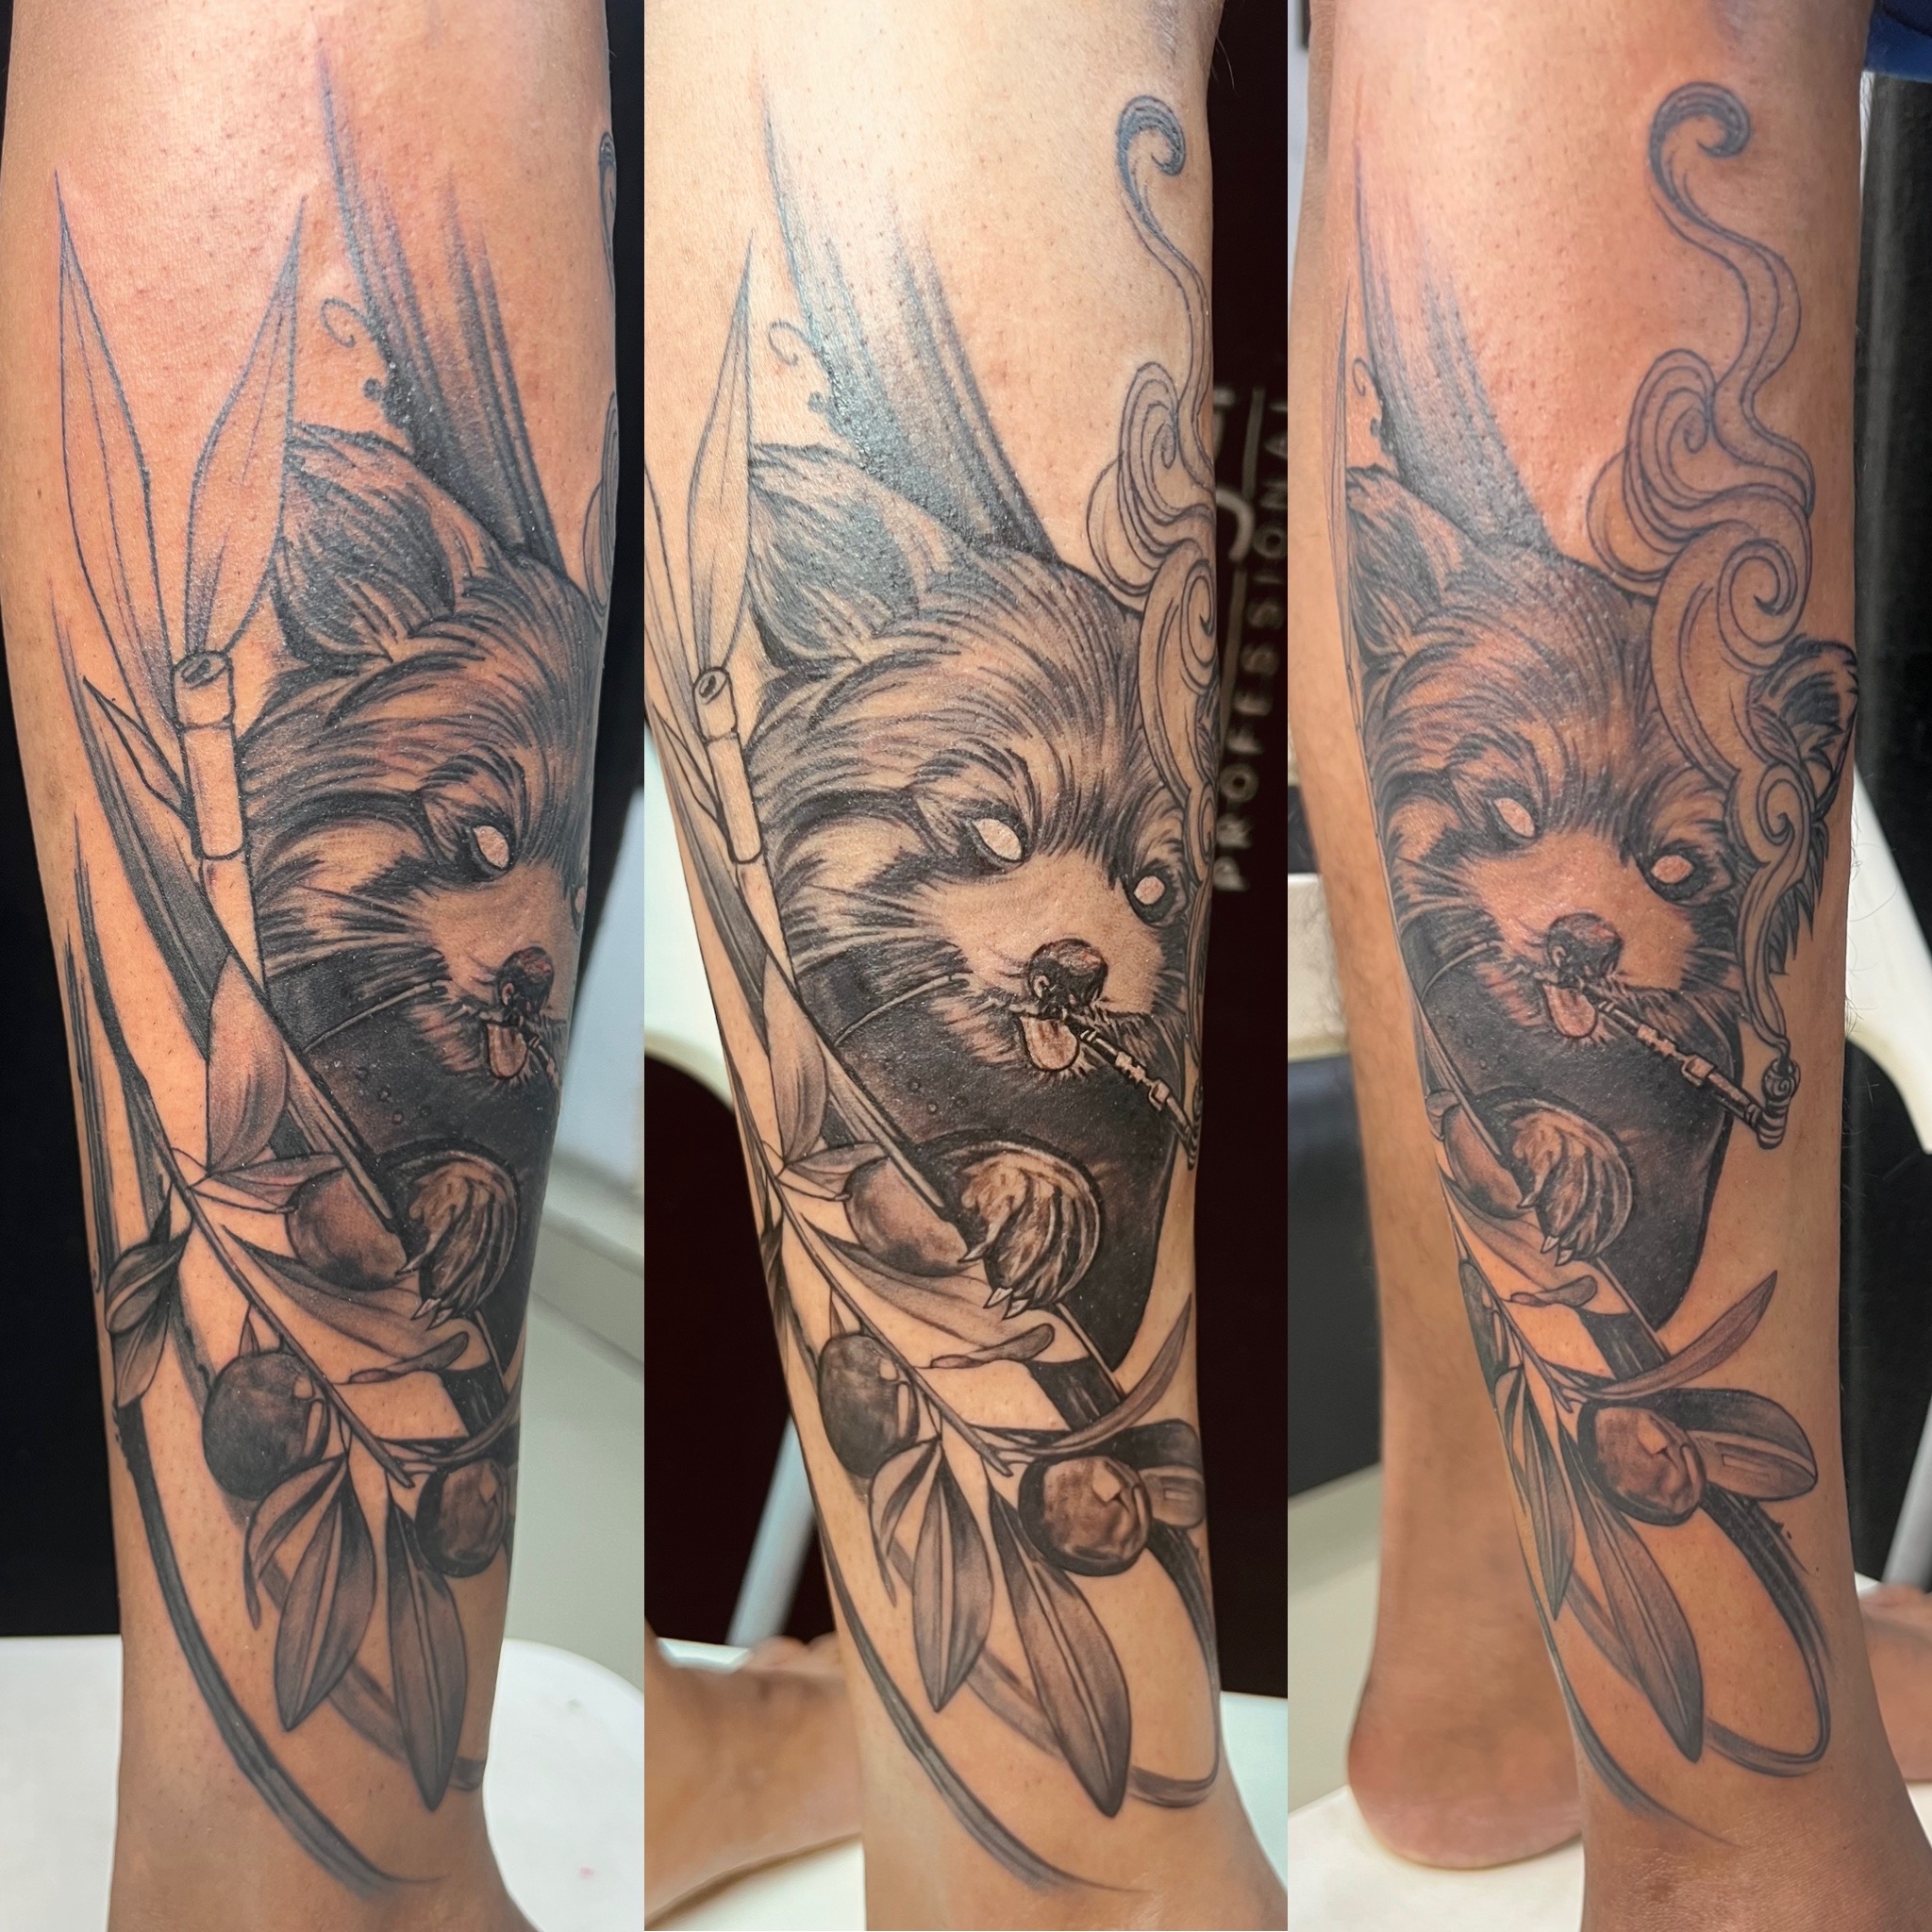 Raccoon dog tattoo on leg